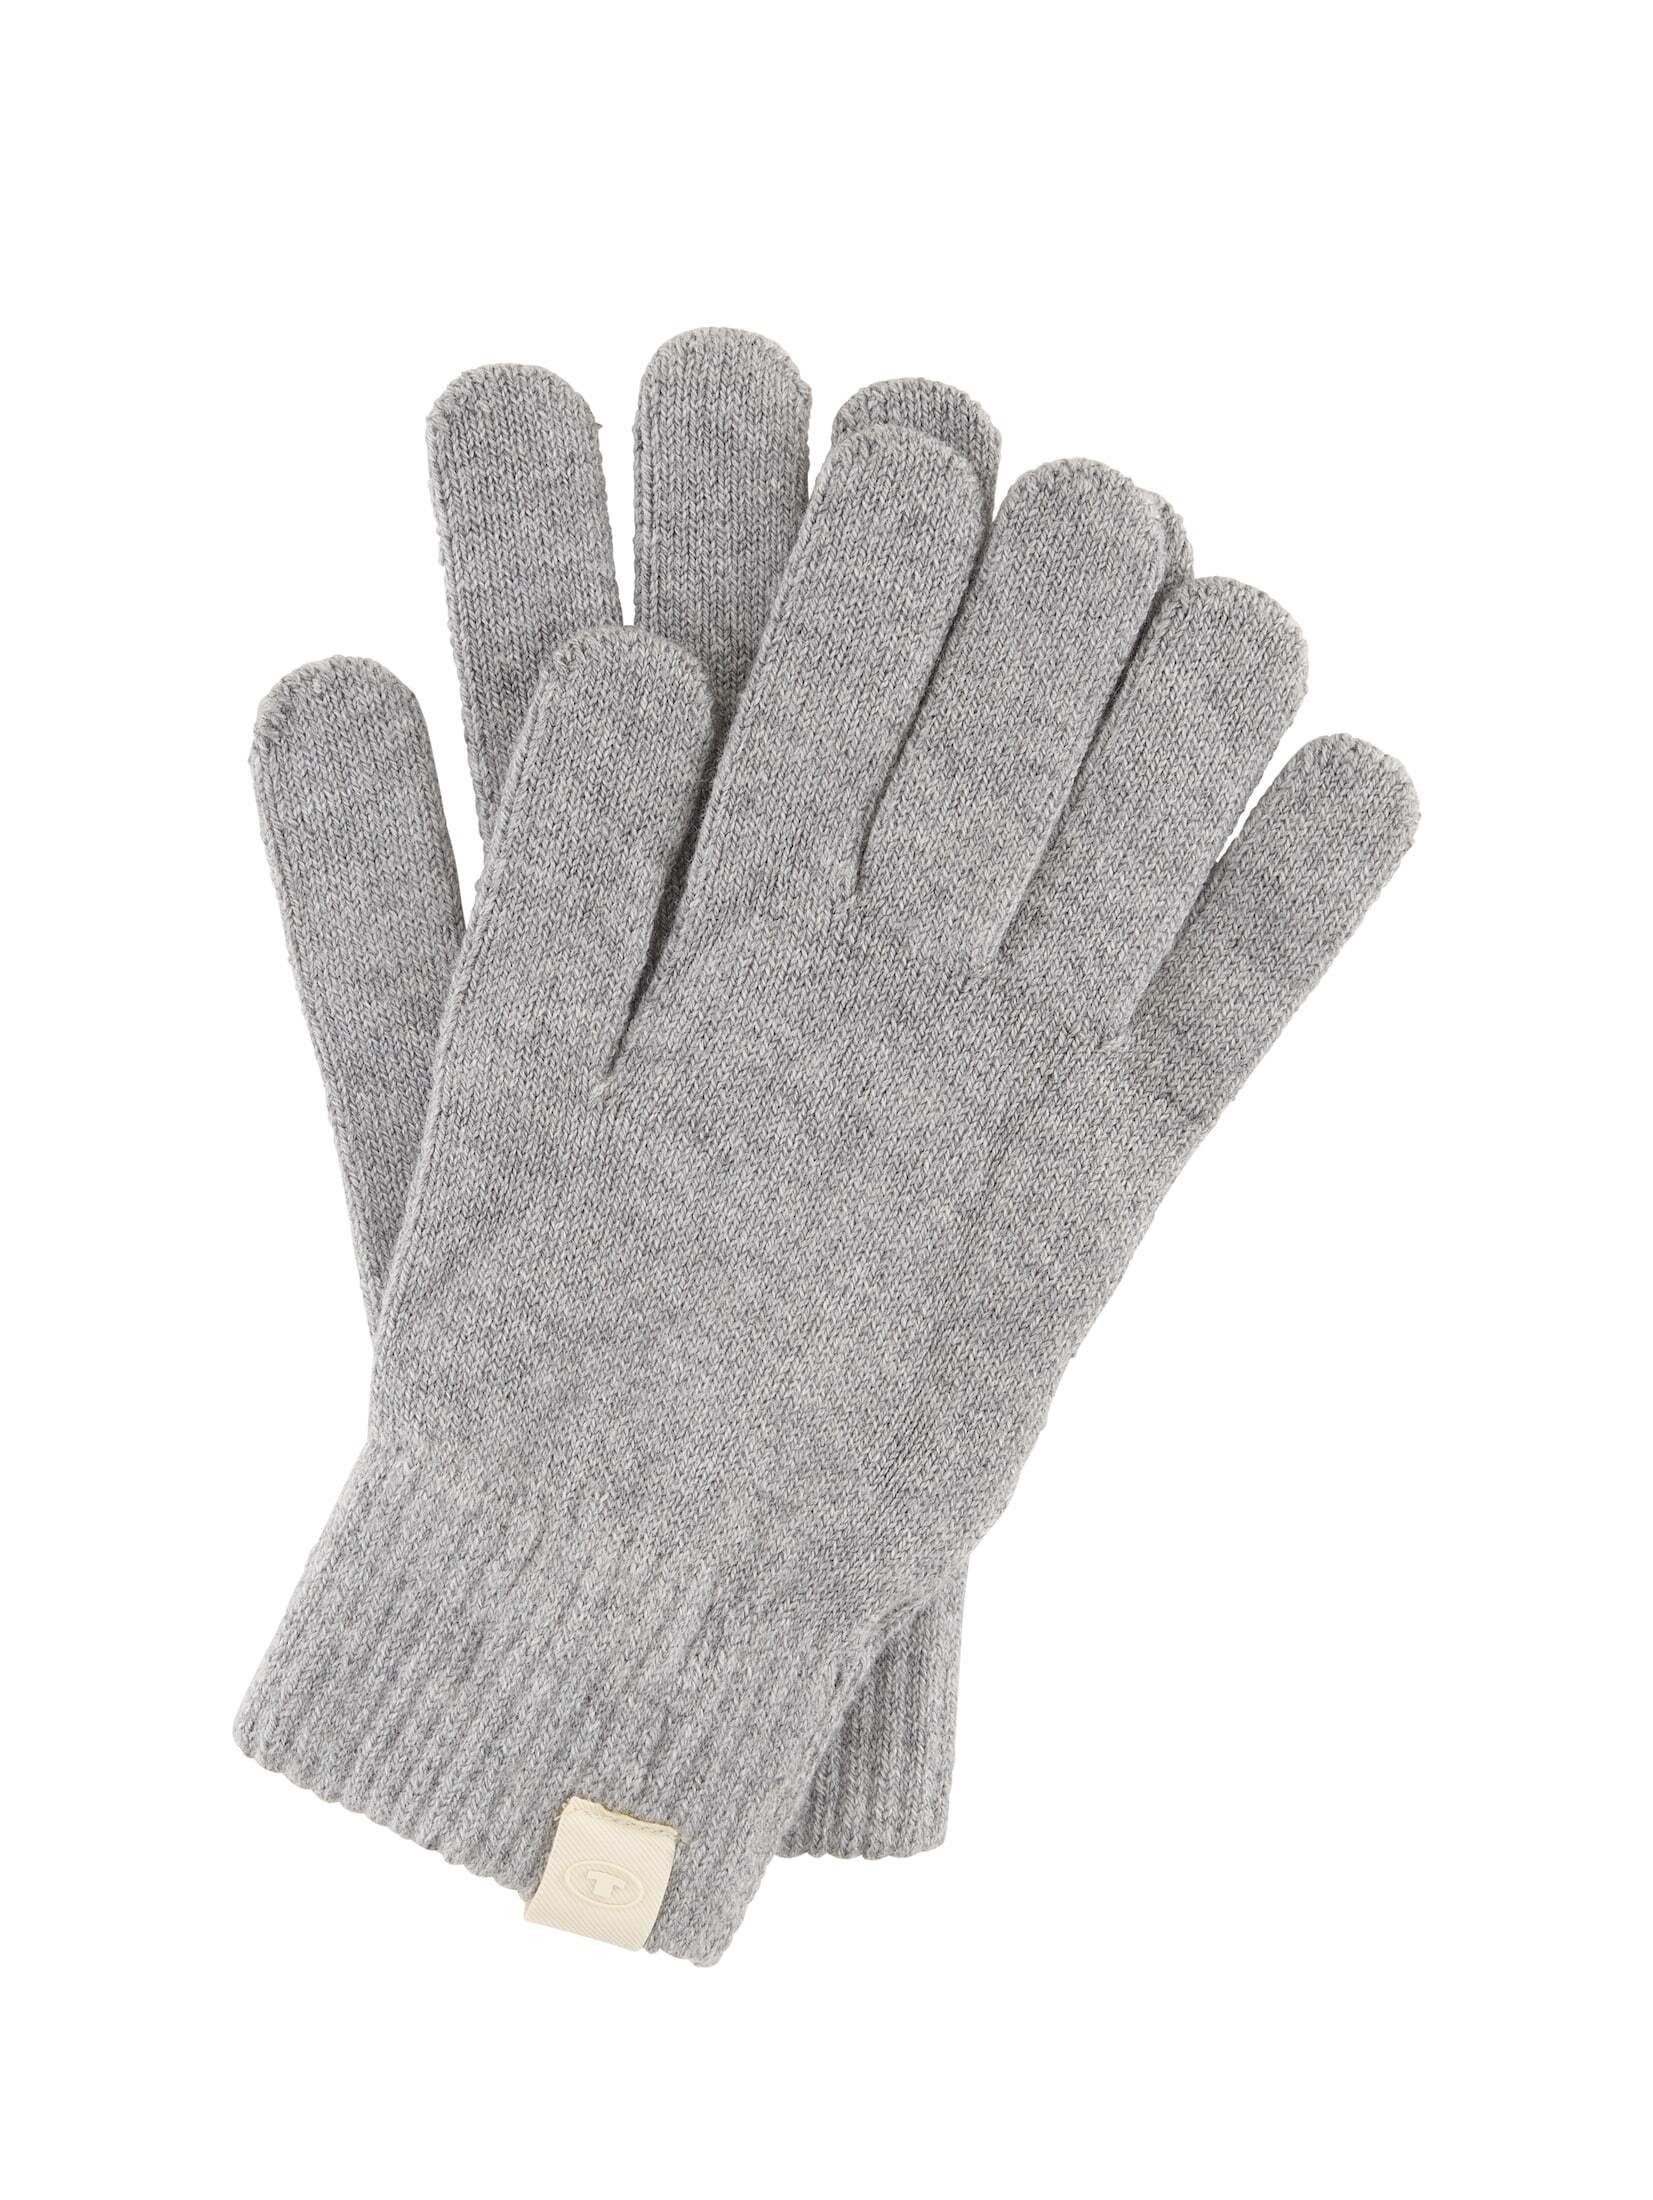 TOM TAILOR Lederhandschuhe Handschuhe aus Strick Grey Heather Melange